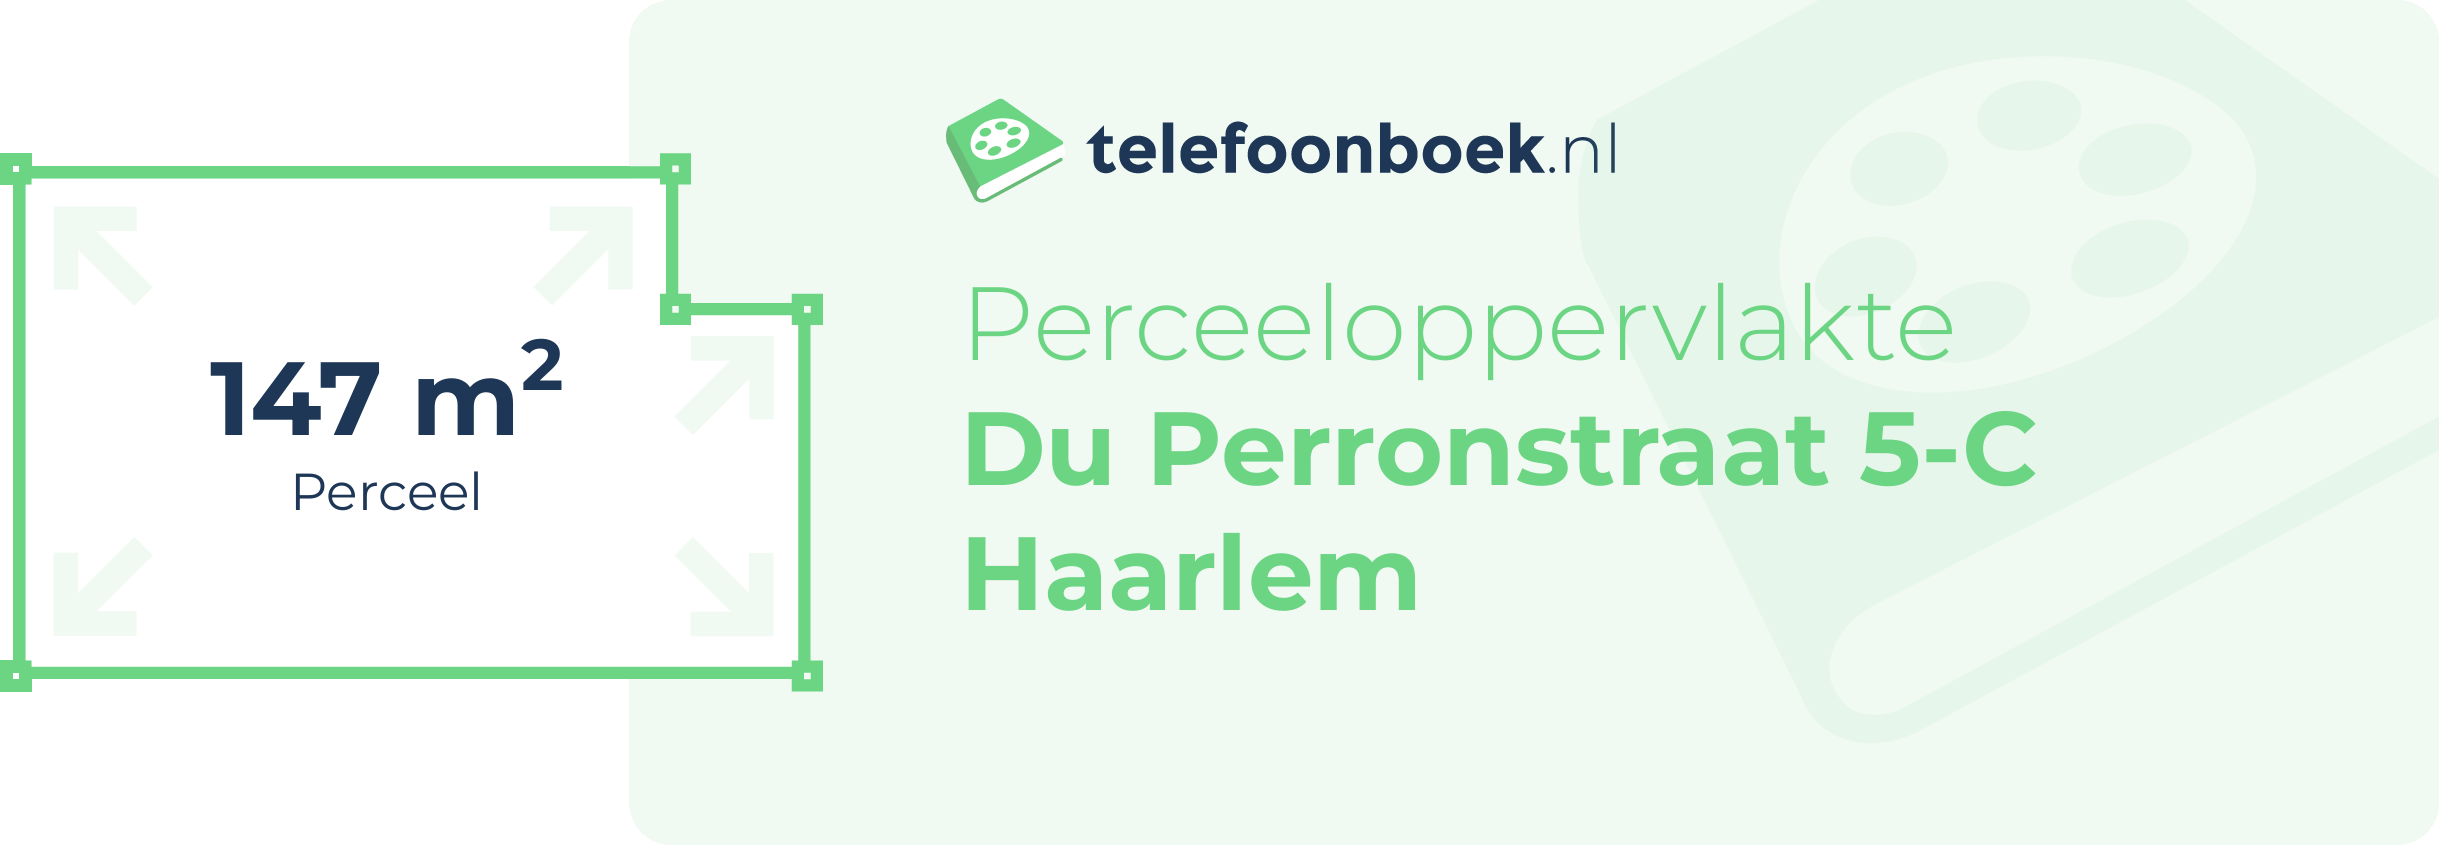 Perceeloppervlakte Du Perronstraat 5-C Haarlem